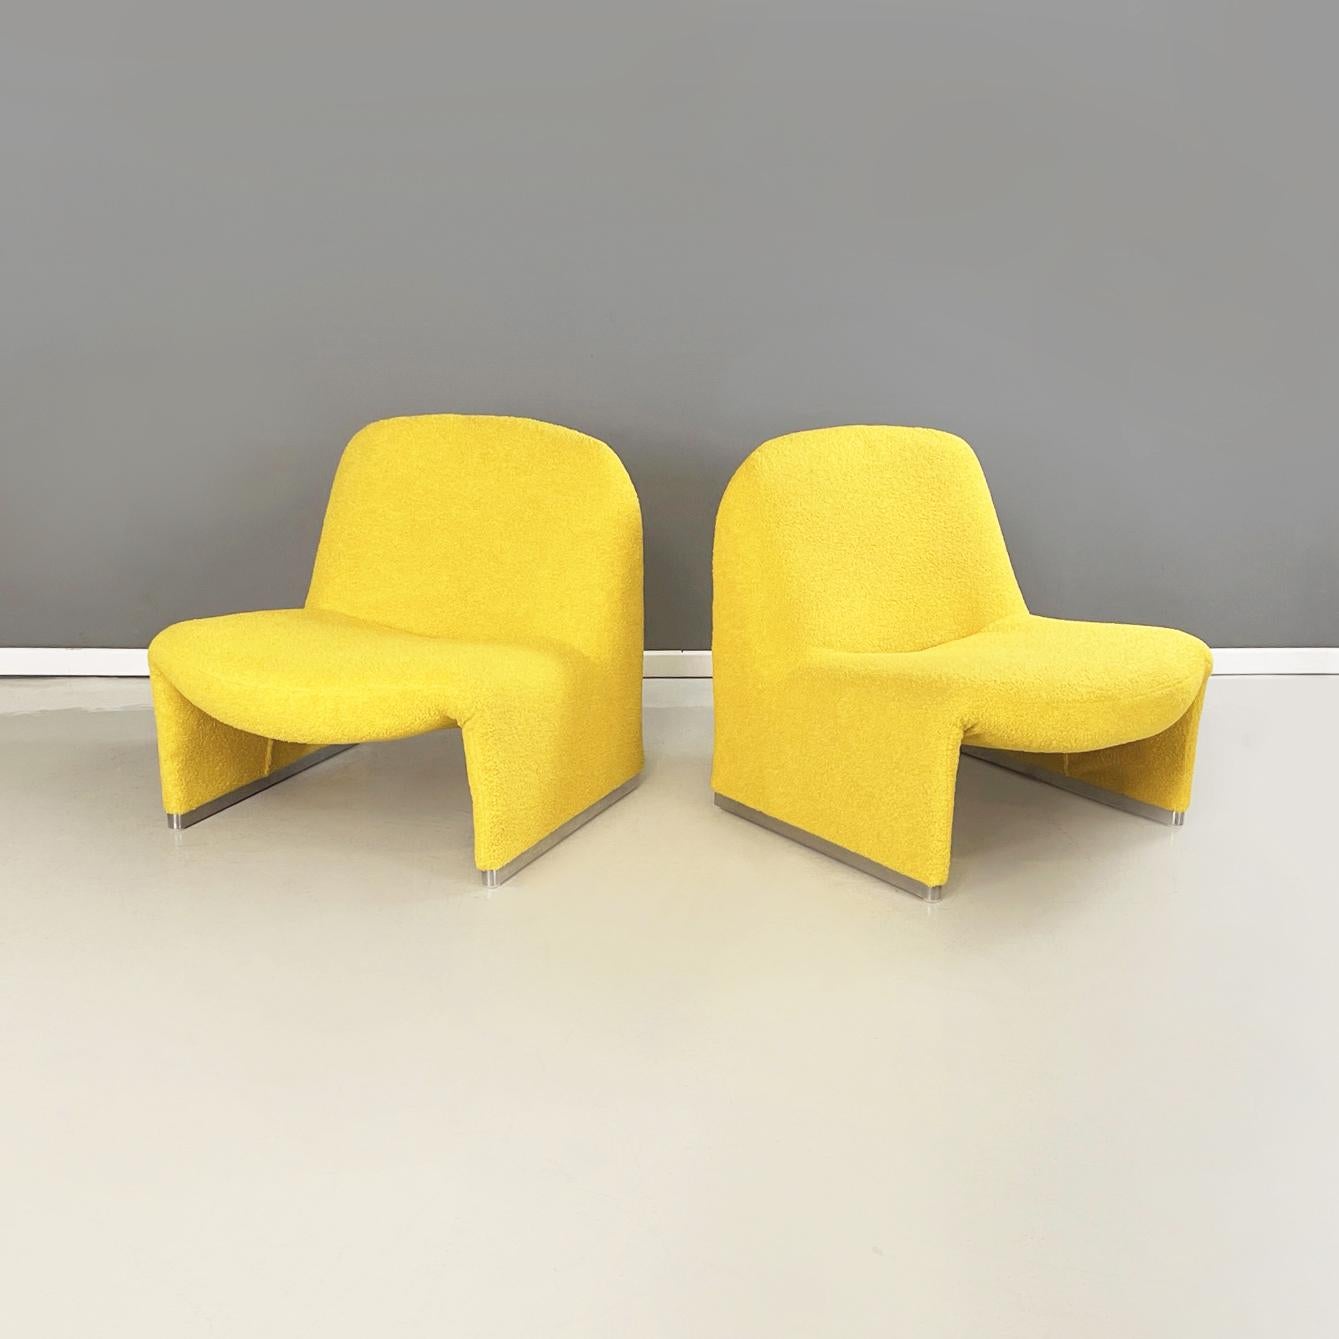 Fauteuils modernes italiens en tissu jaune Alky par Giancarlo Piretti pour Anonima Castelli, 1970
Paire de fauteuils mod. Alky en tissu teddy jaune. La structure monocoque est pourvue de part et d'autre de pieds en aluminium satiné.
Produit par